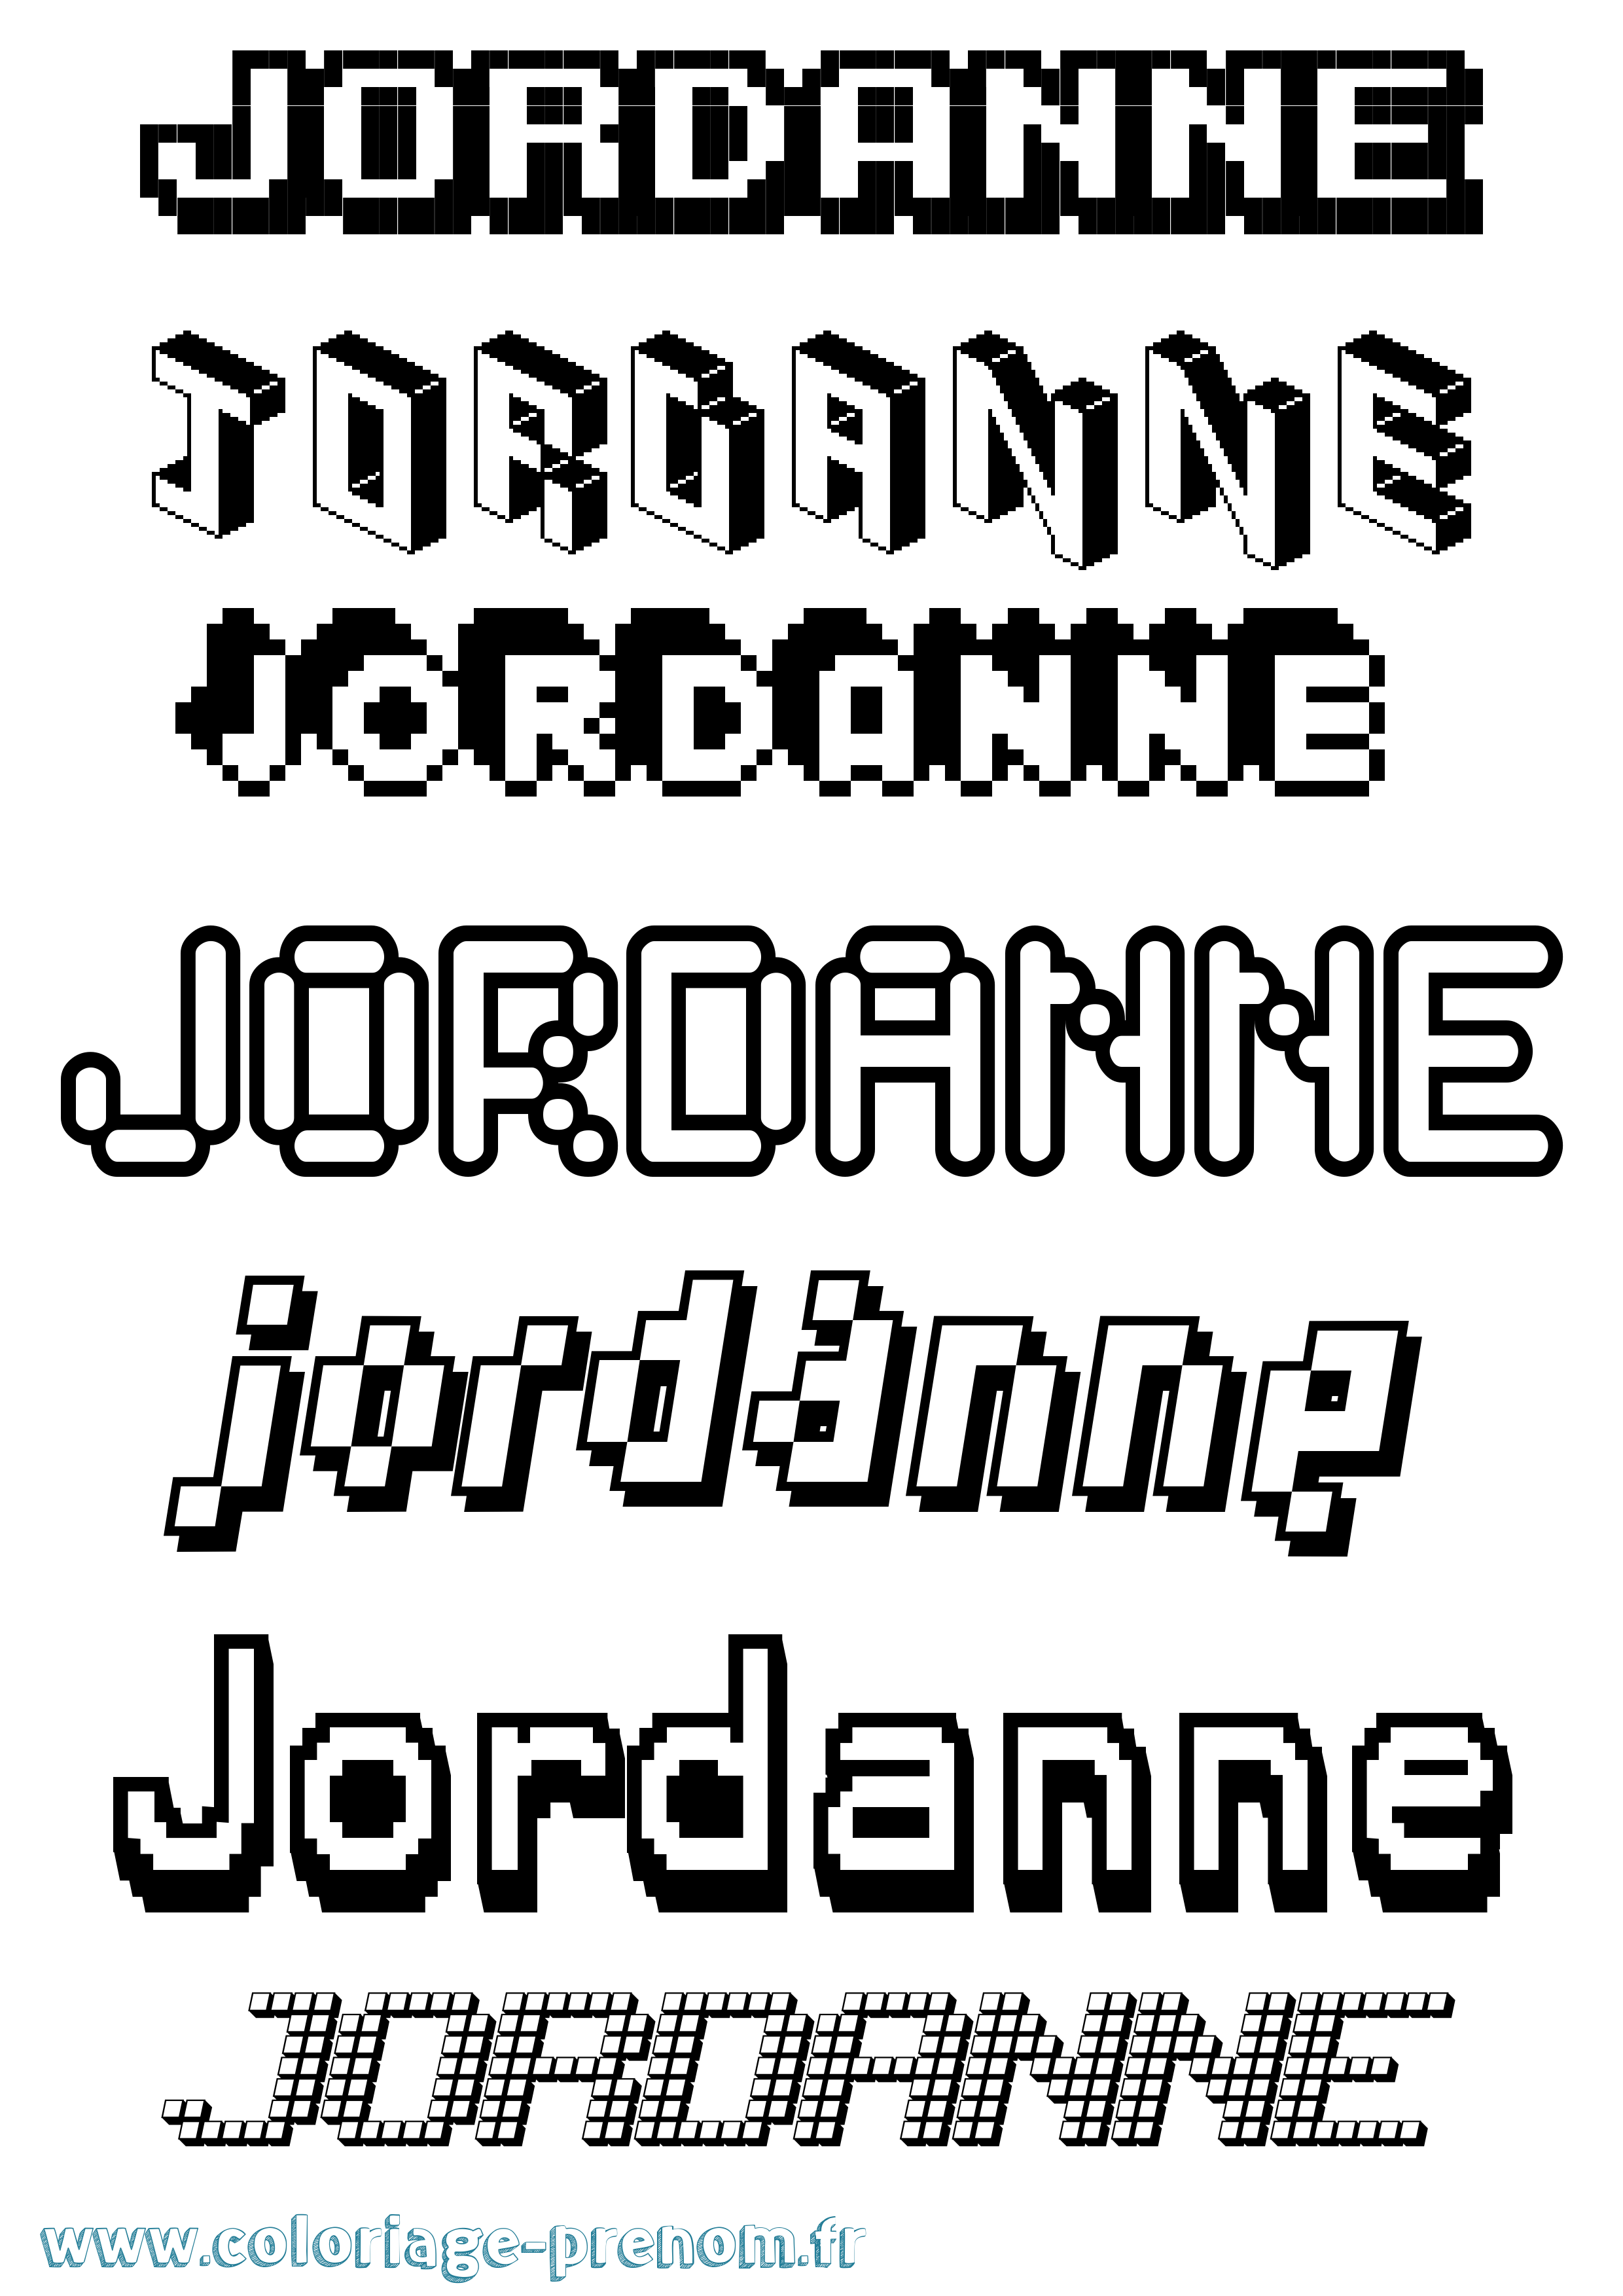 Coloriage prénom Jordanne Pixel